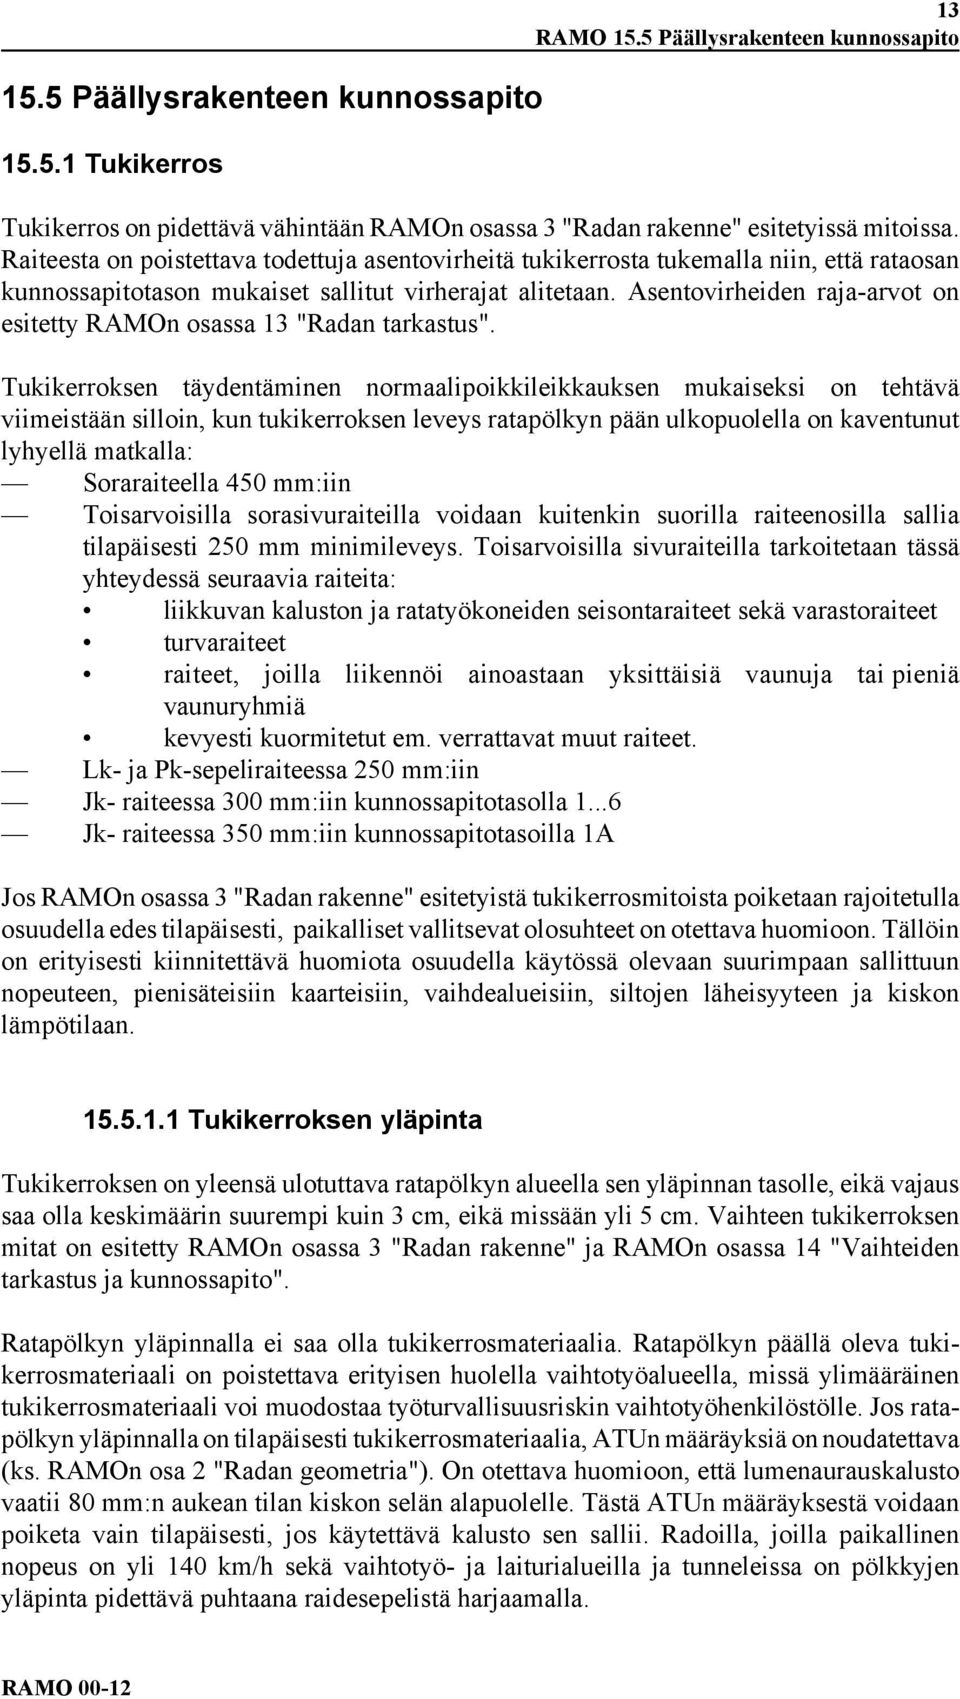 Asentovirheiden raja-arvot on esitetty RAMOn osassa 13 "Radan tarkastus".